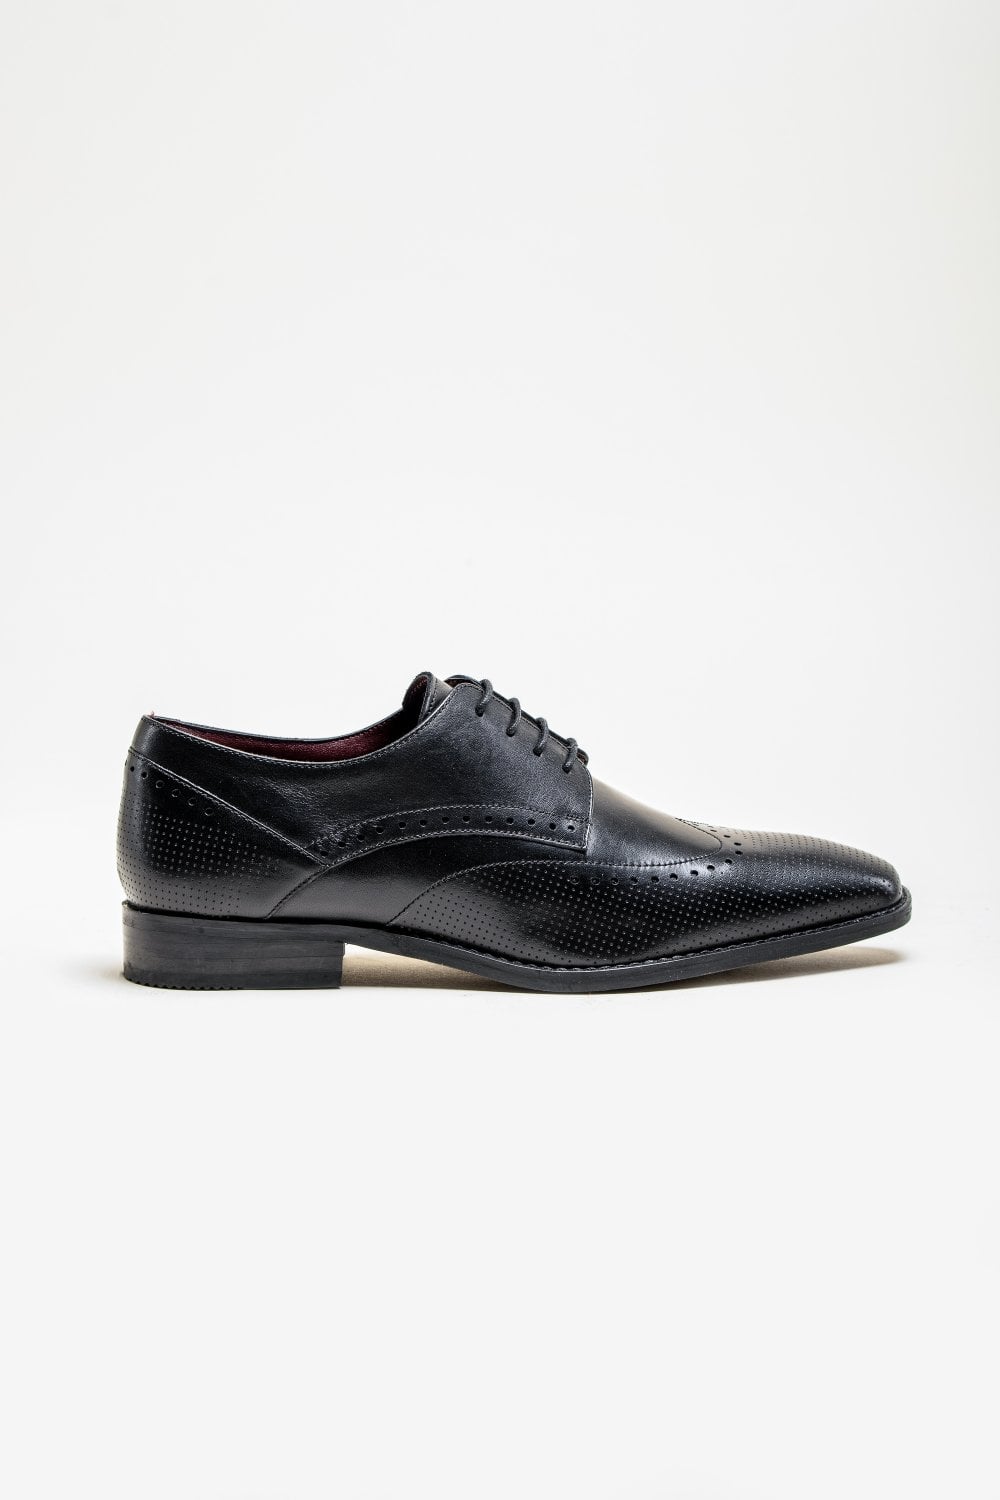 Cavani Lisbon Chaussures noires - Bout d’aile Brogue